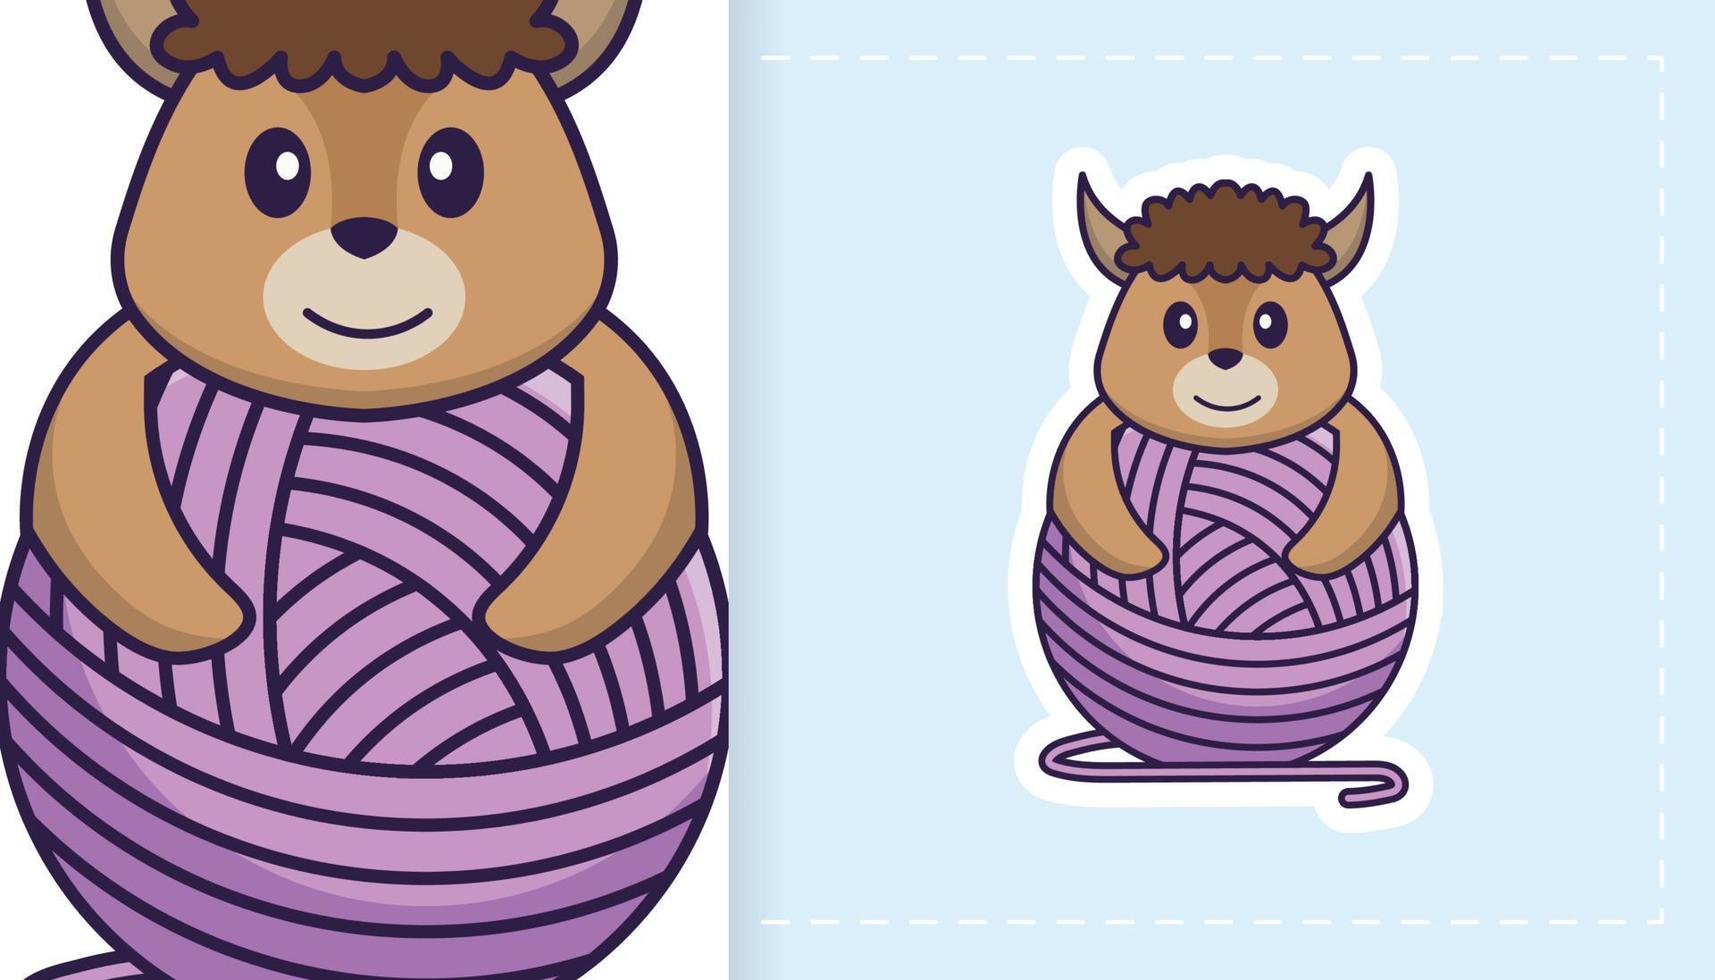 lindo personaje de mascota de oveja. se puede utilizar para pegatinas, parches, textiles, papel. ilustración vectorial vector